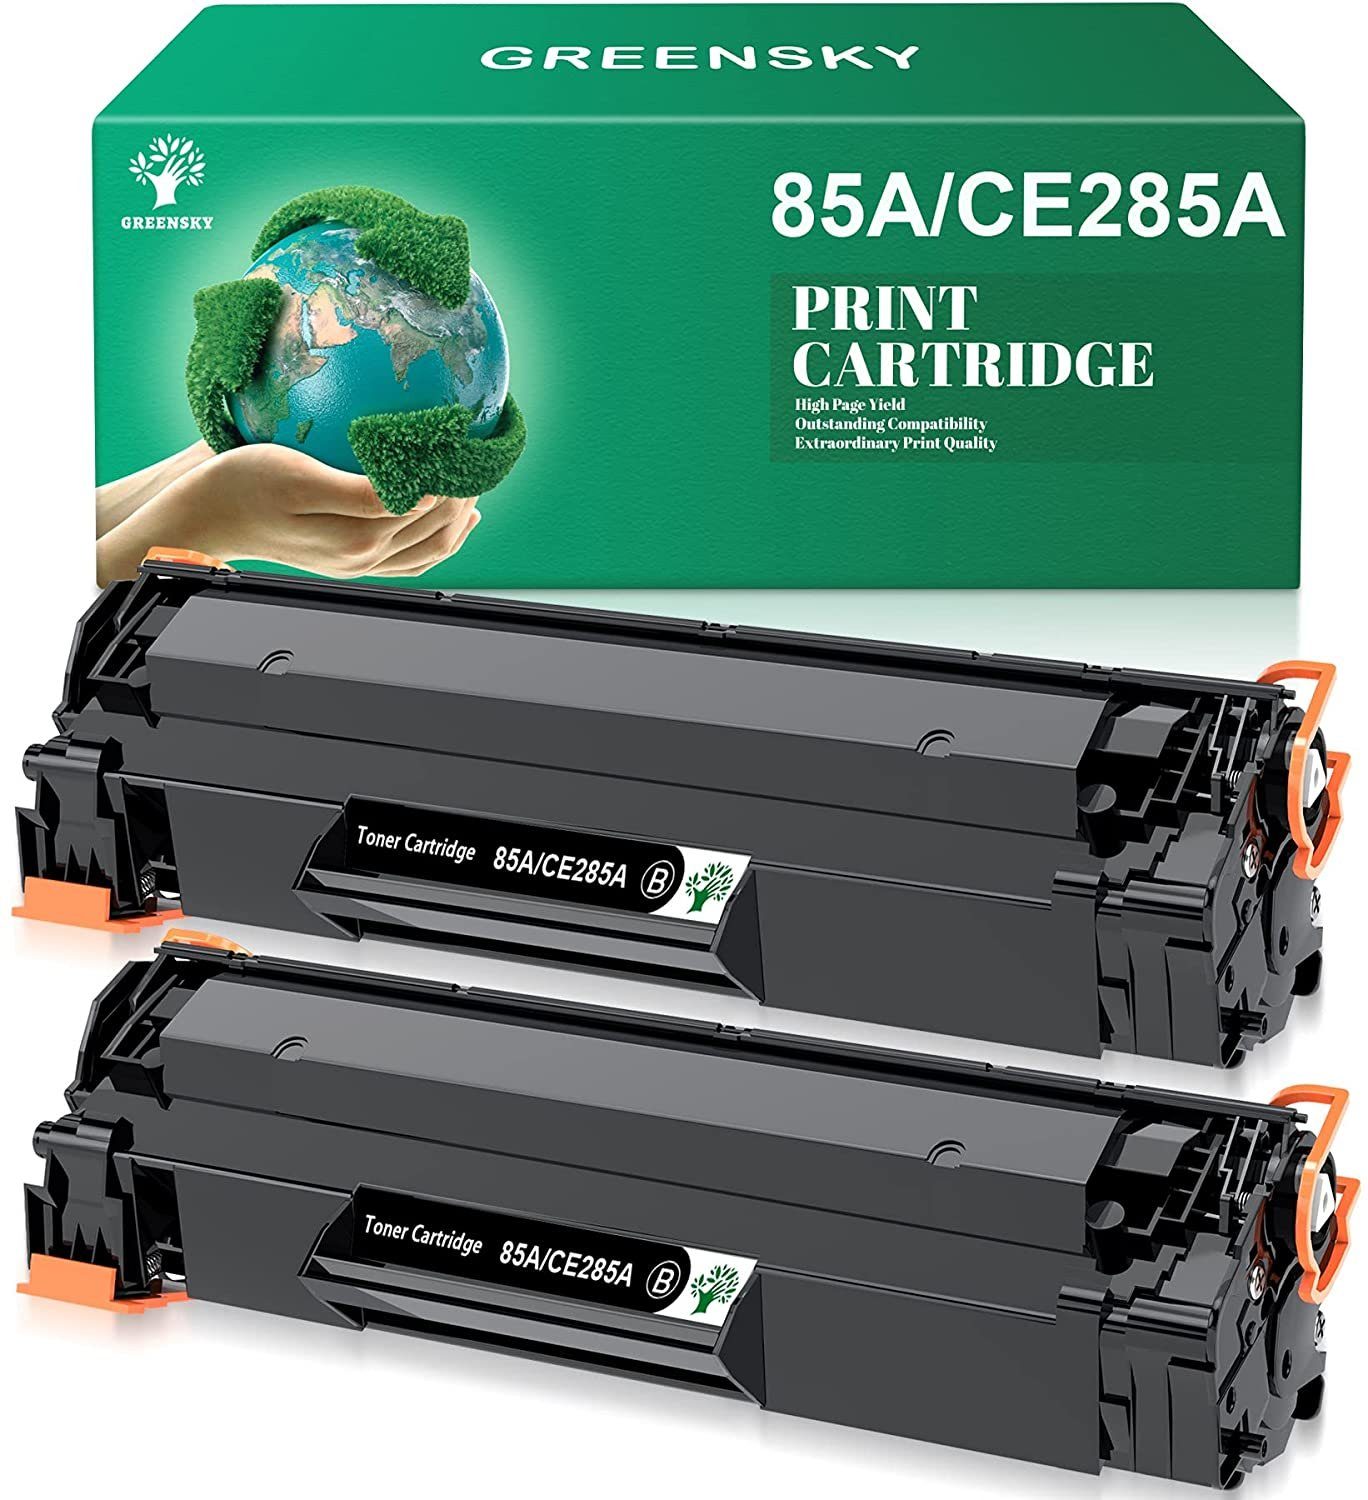 Greensky Tonerpatrone für HP 85A CE285A Laserjet Pro P1100 M1136 M1210, ( toner schwarz, 2-St), hp laserjet p1102w p1102 p1005 m1212nf